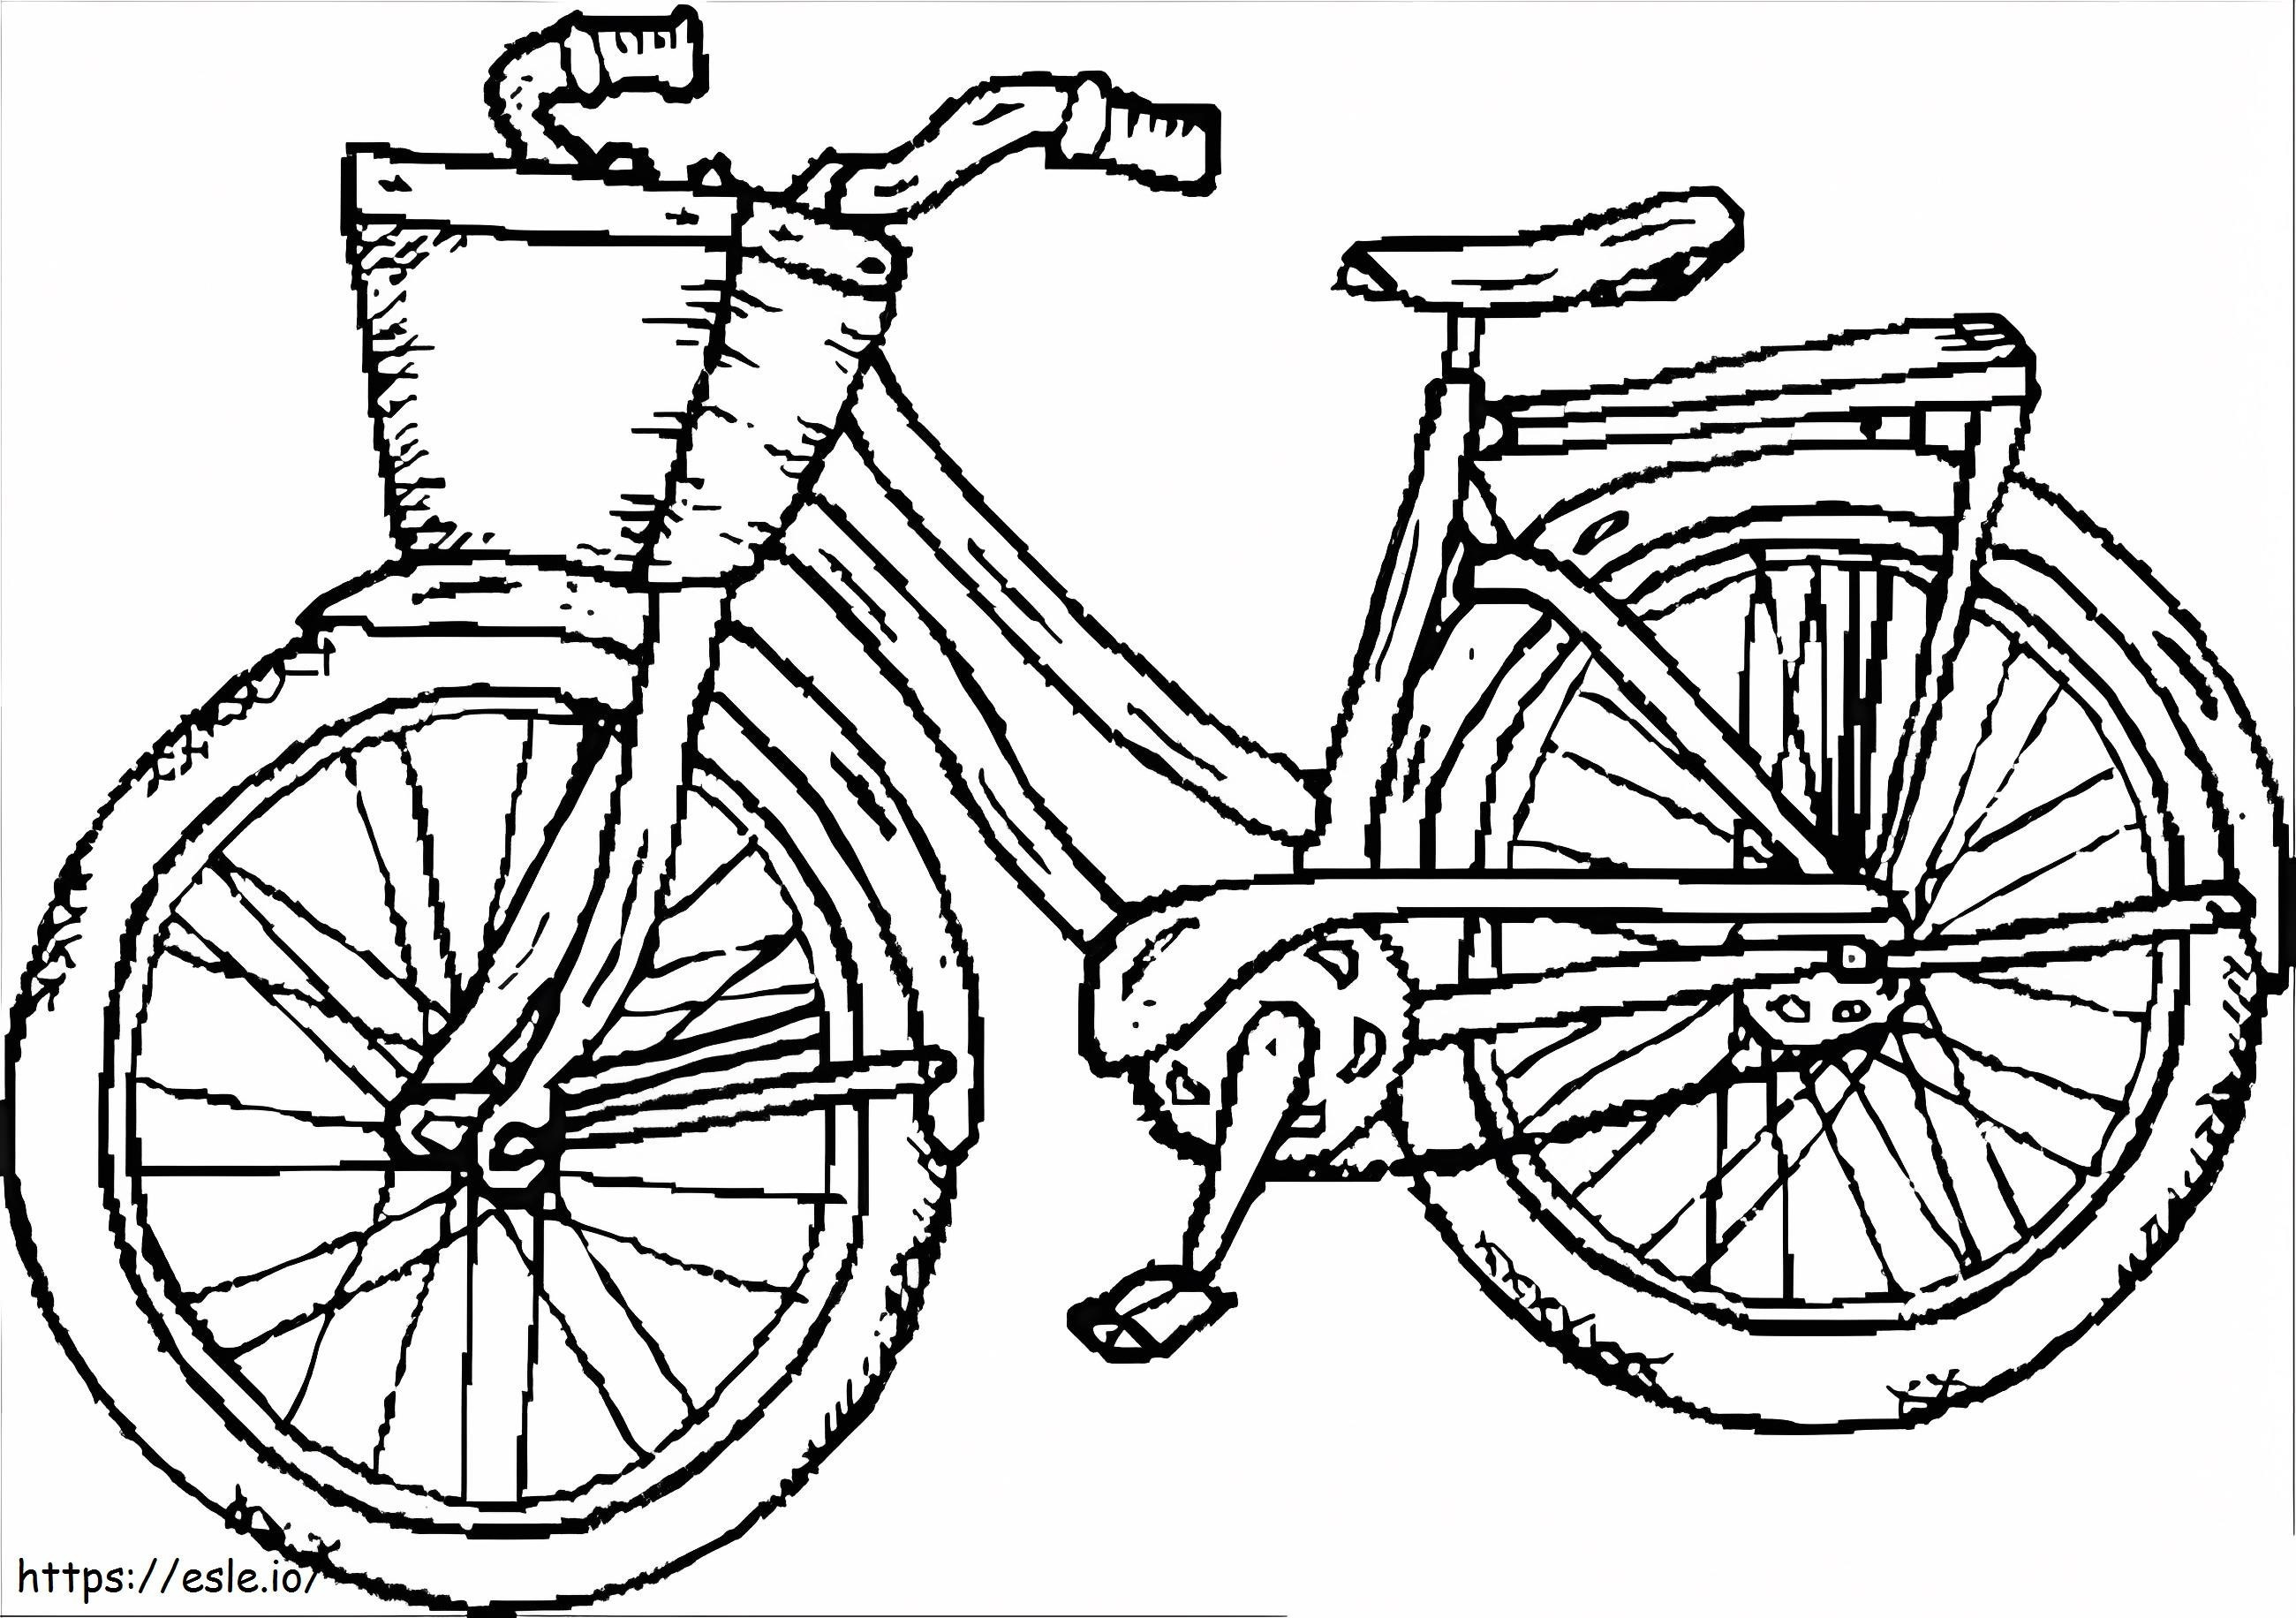 Fahrrad für Mädchen ausmalbilder